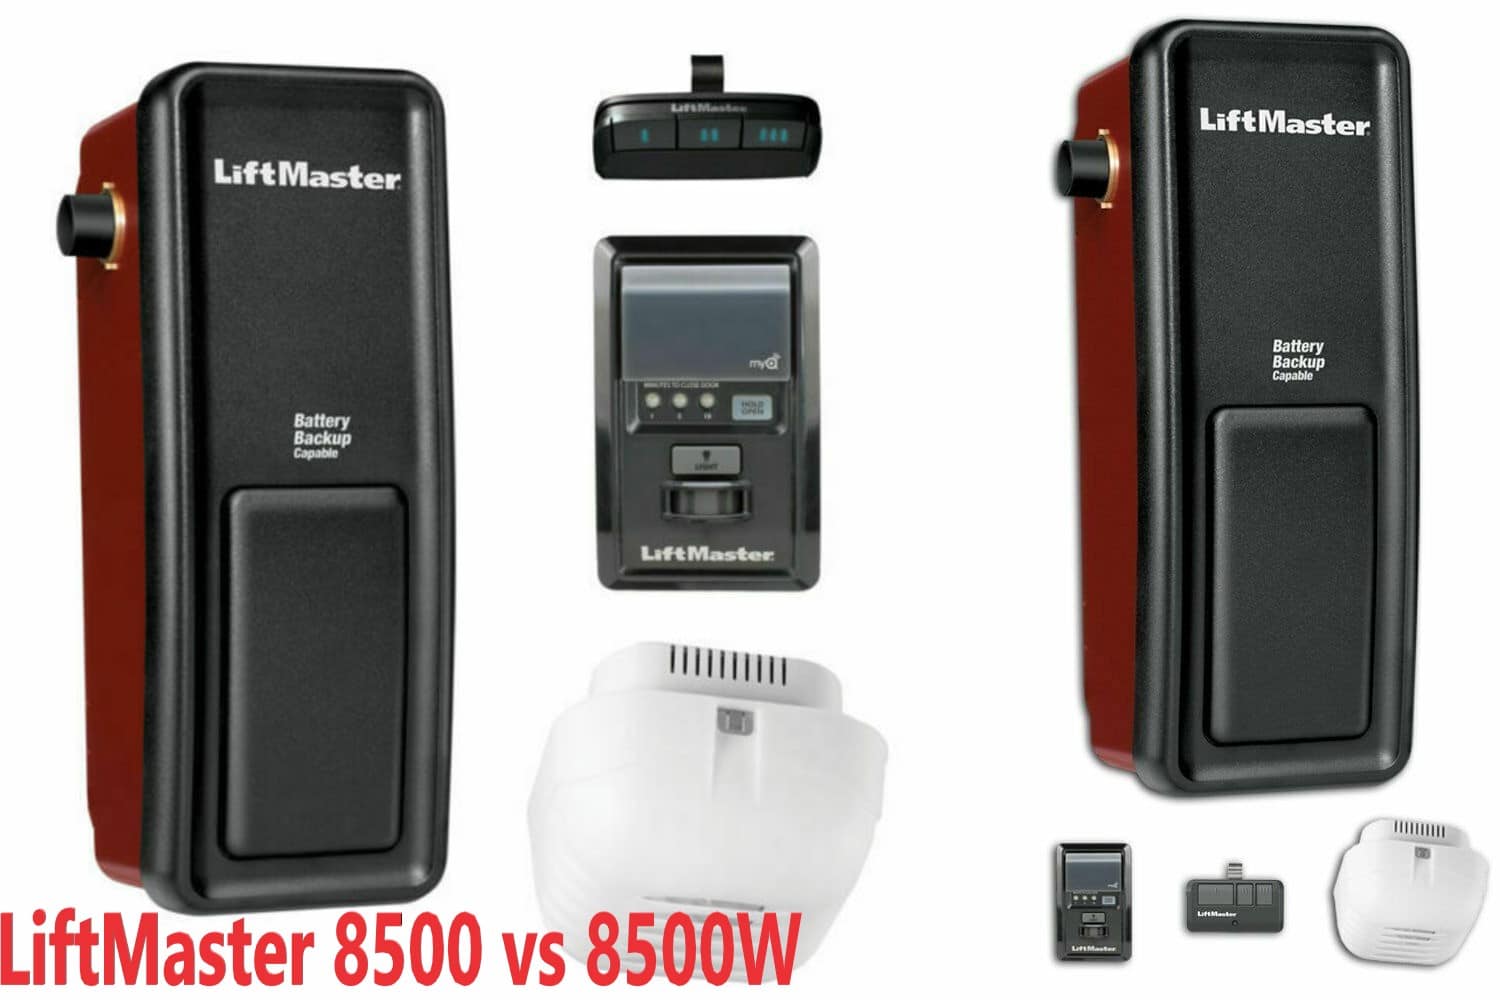 LiftMaster 8500 vs 8500w